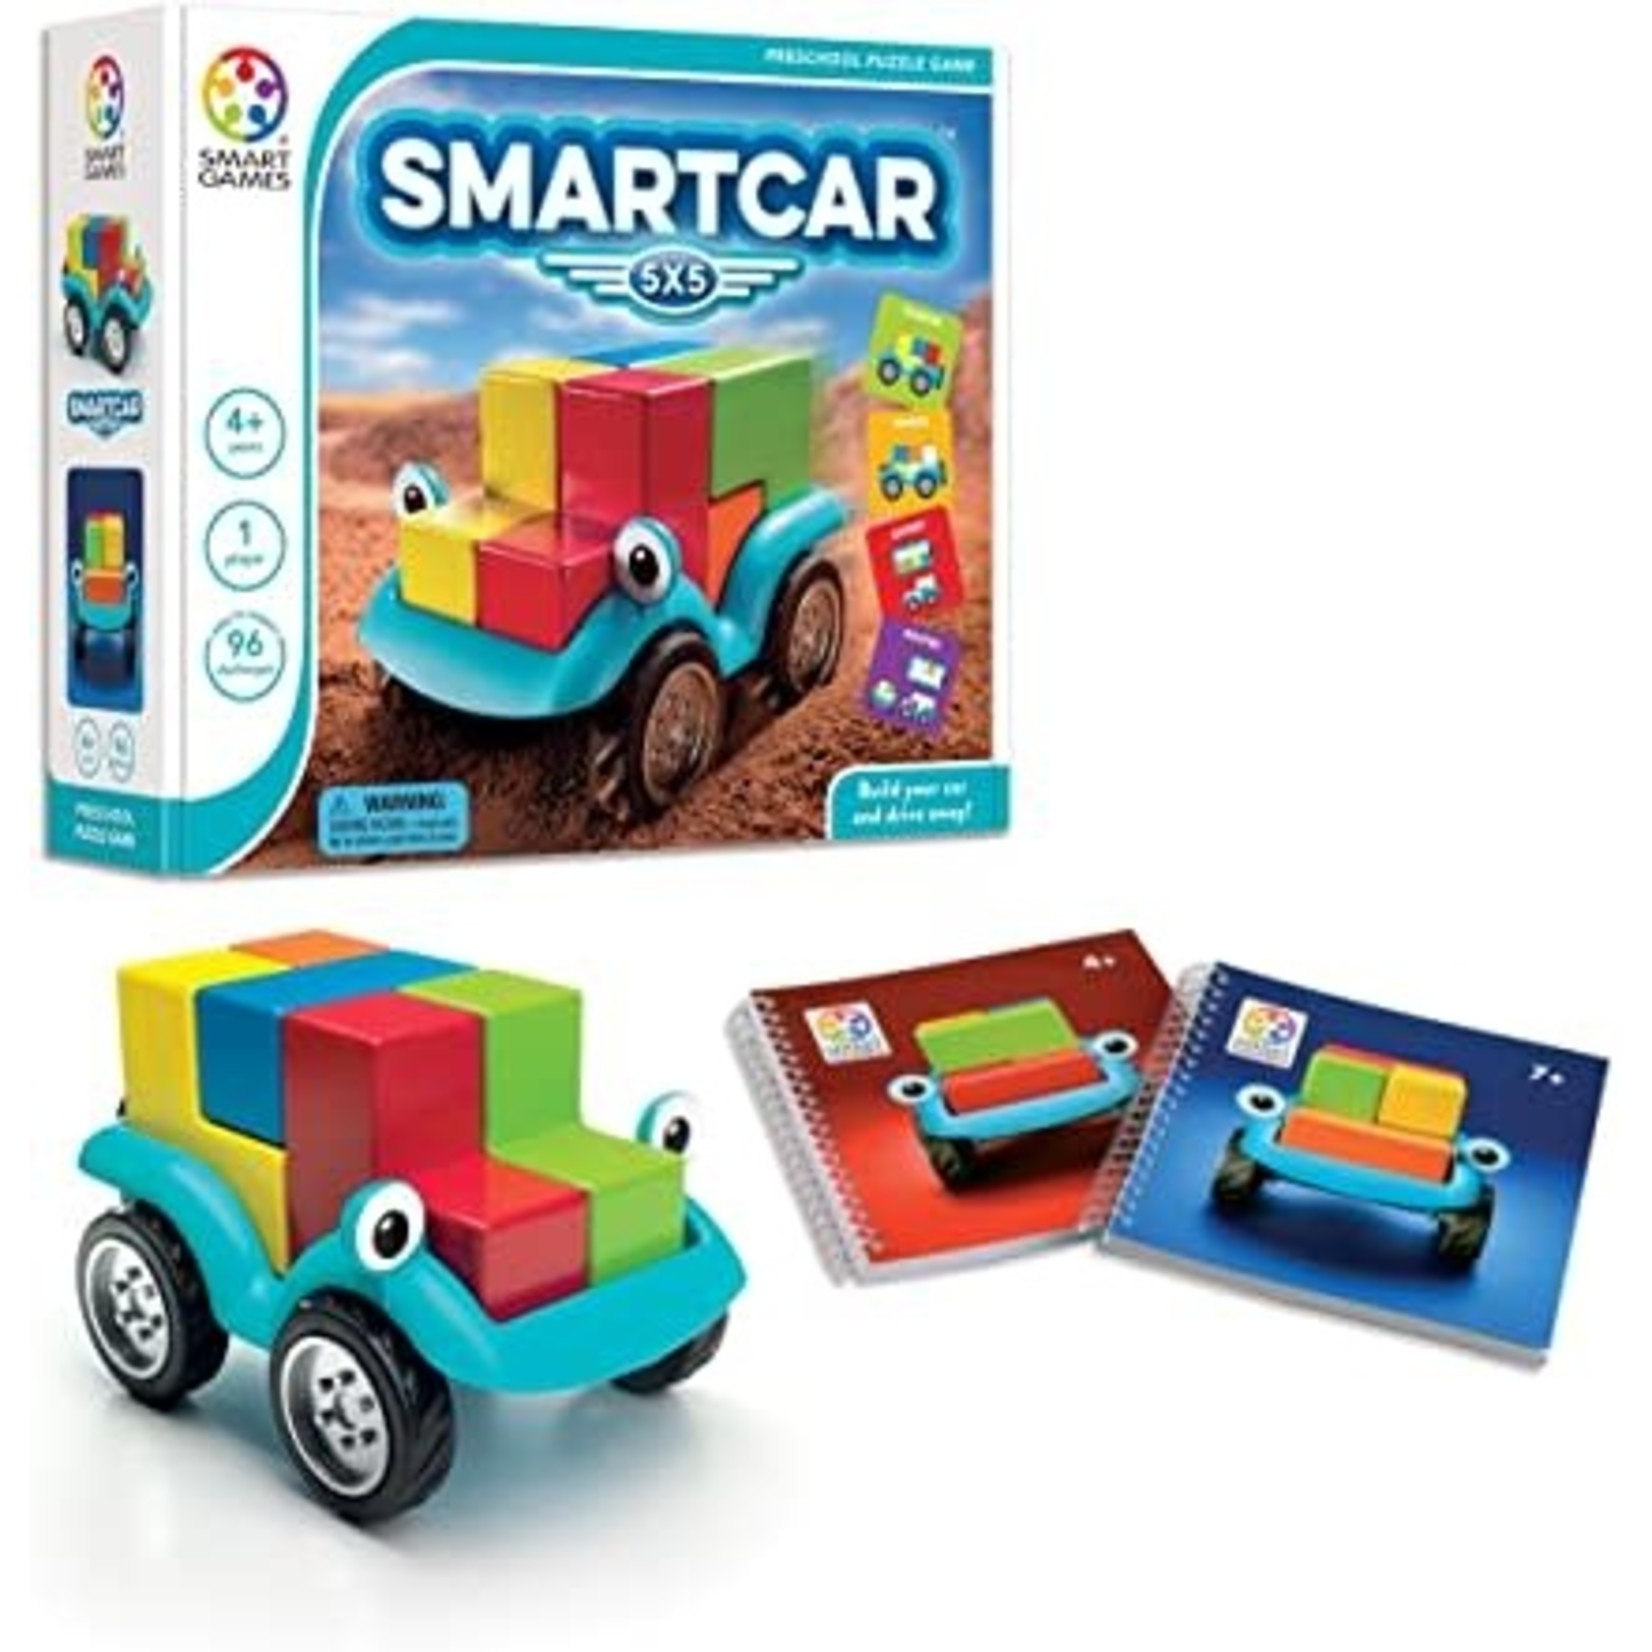 SmartGames Smart Car (5x5)